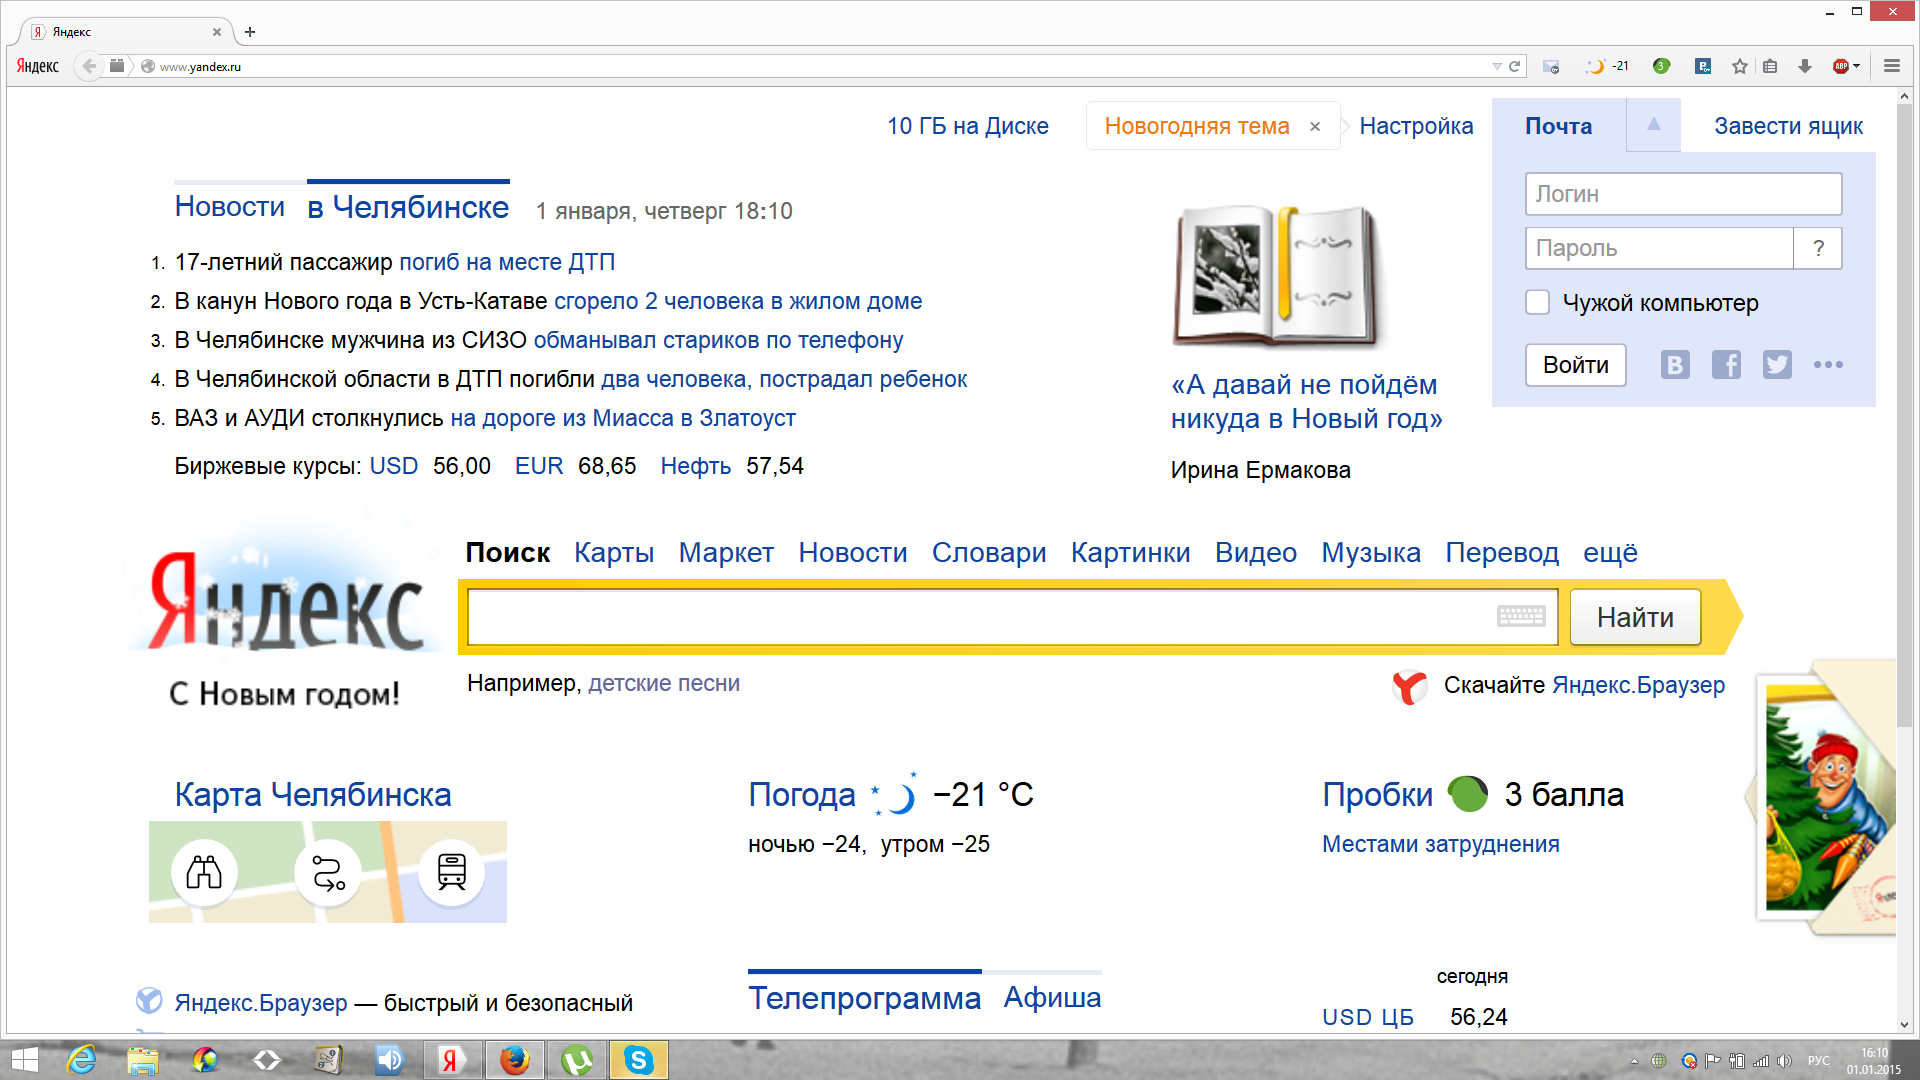 Скриншот главной страницы Яндекса